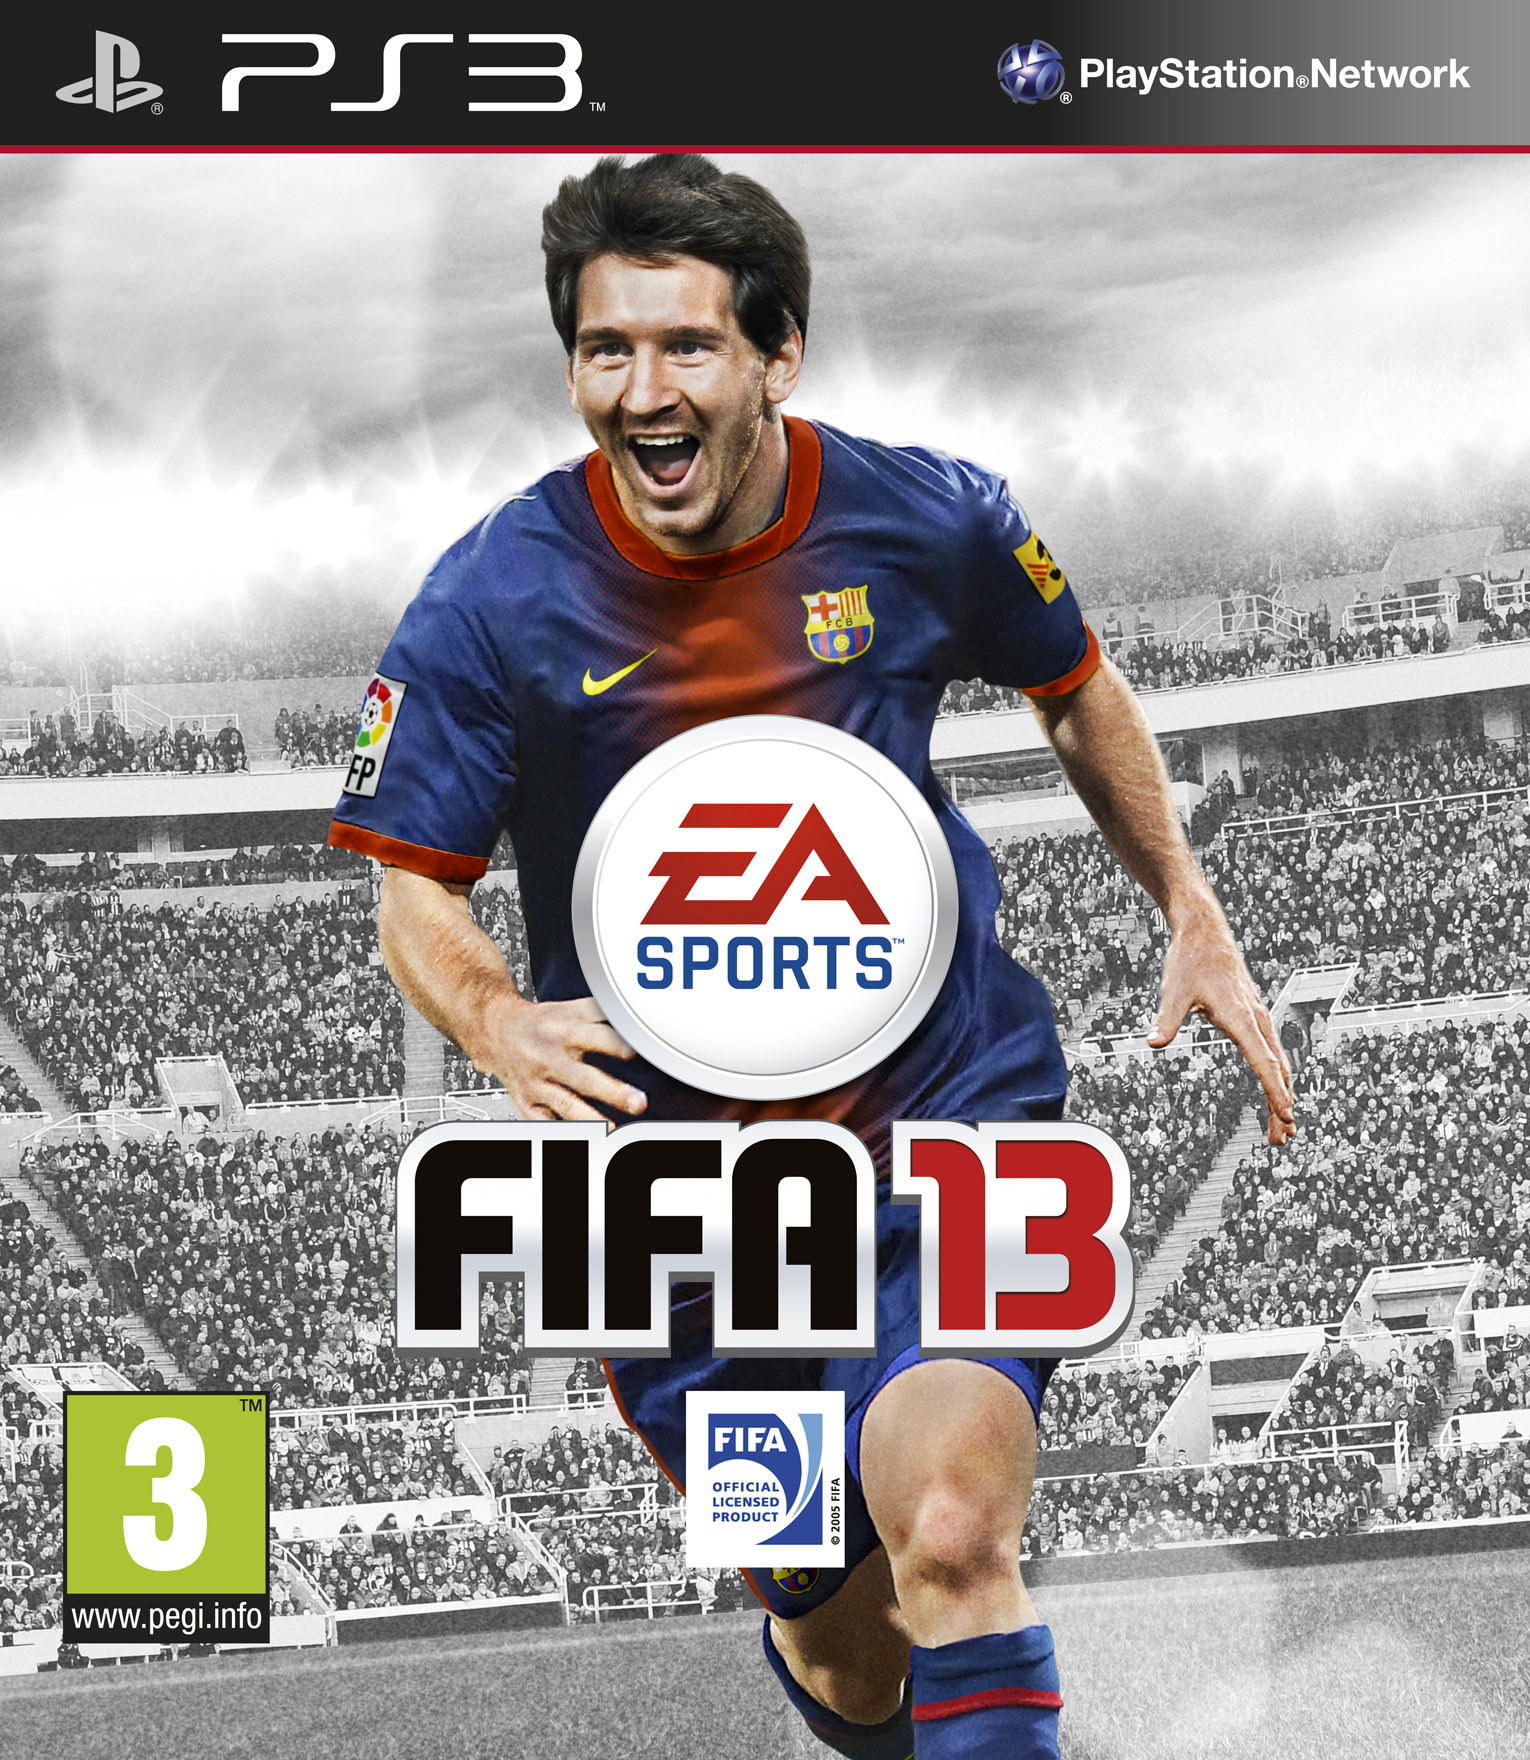 PS3 - FIFA Soccer 13